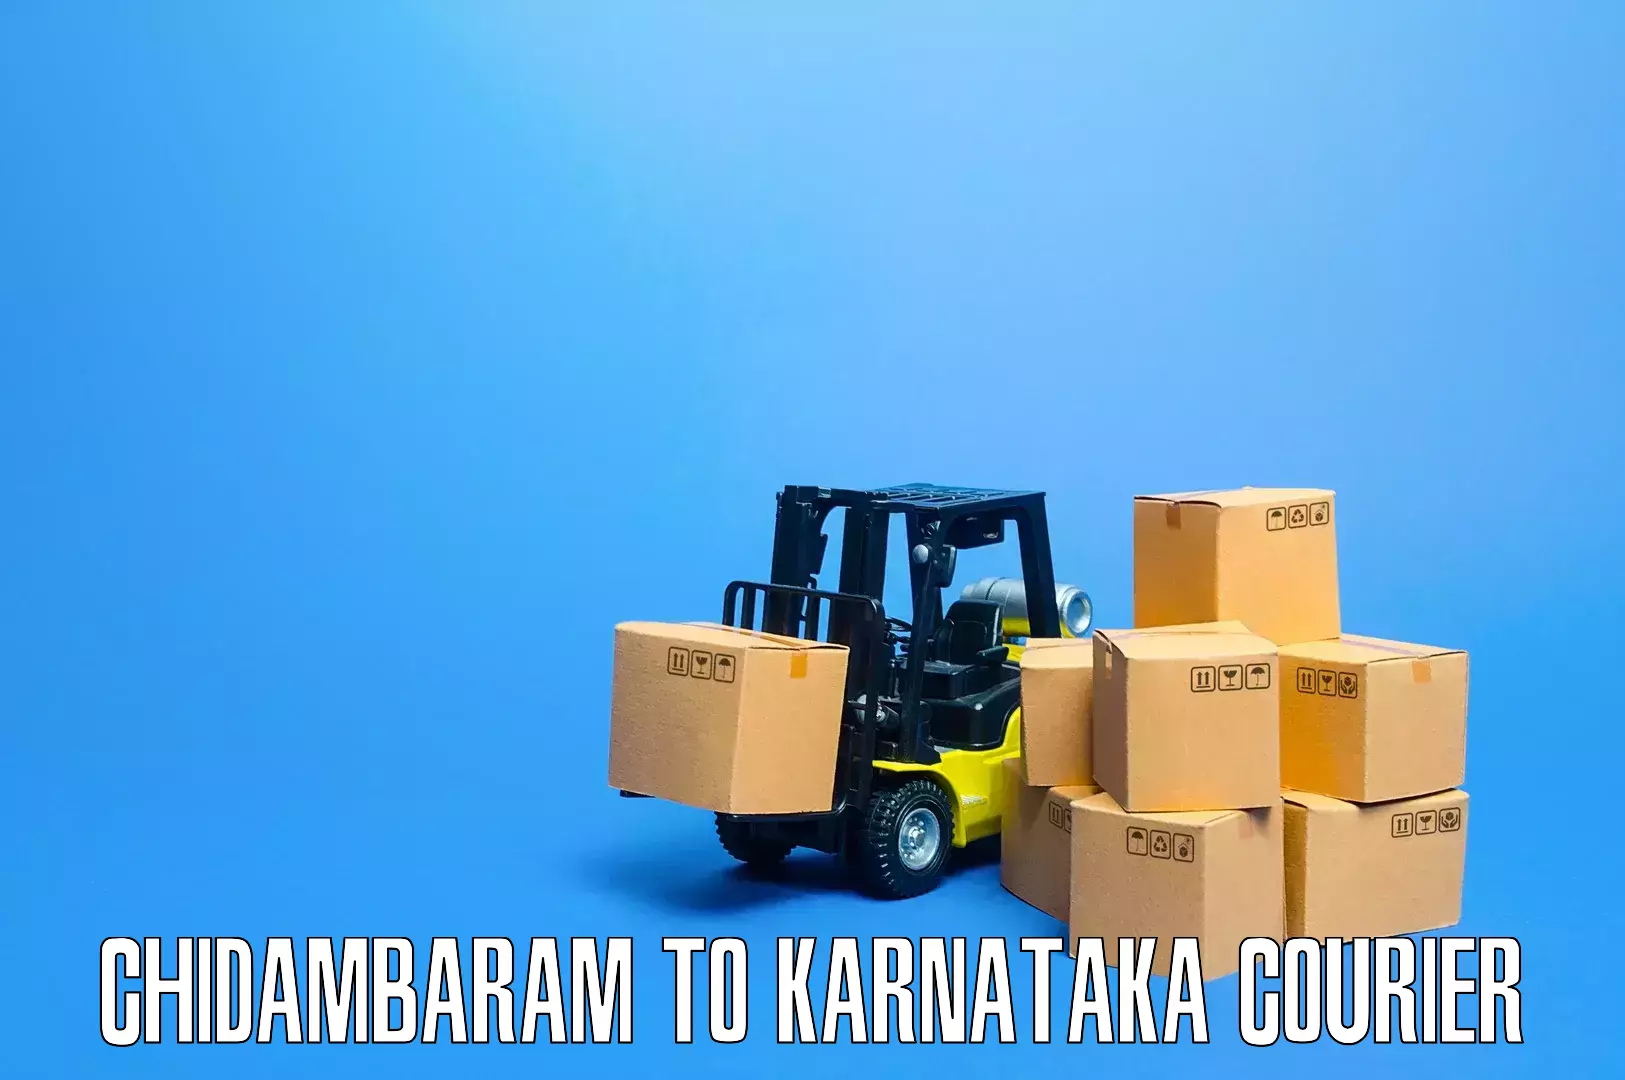 Professional movers and packers Chidambaram to Karnataka